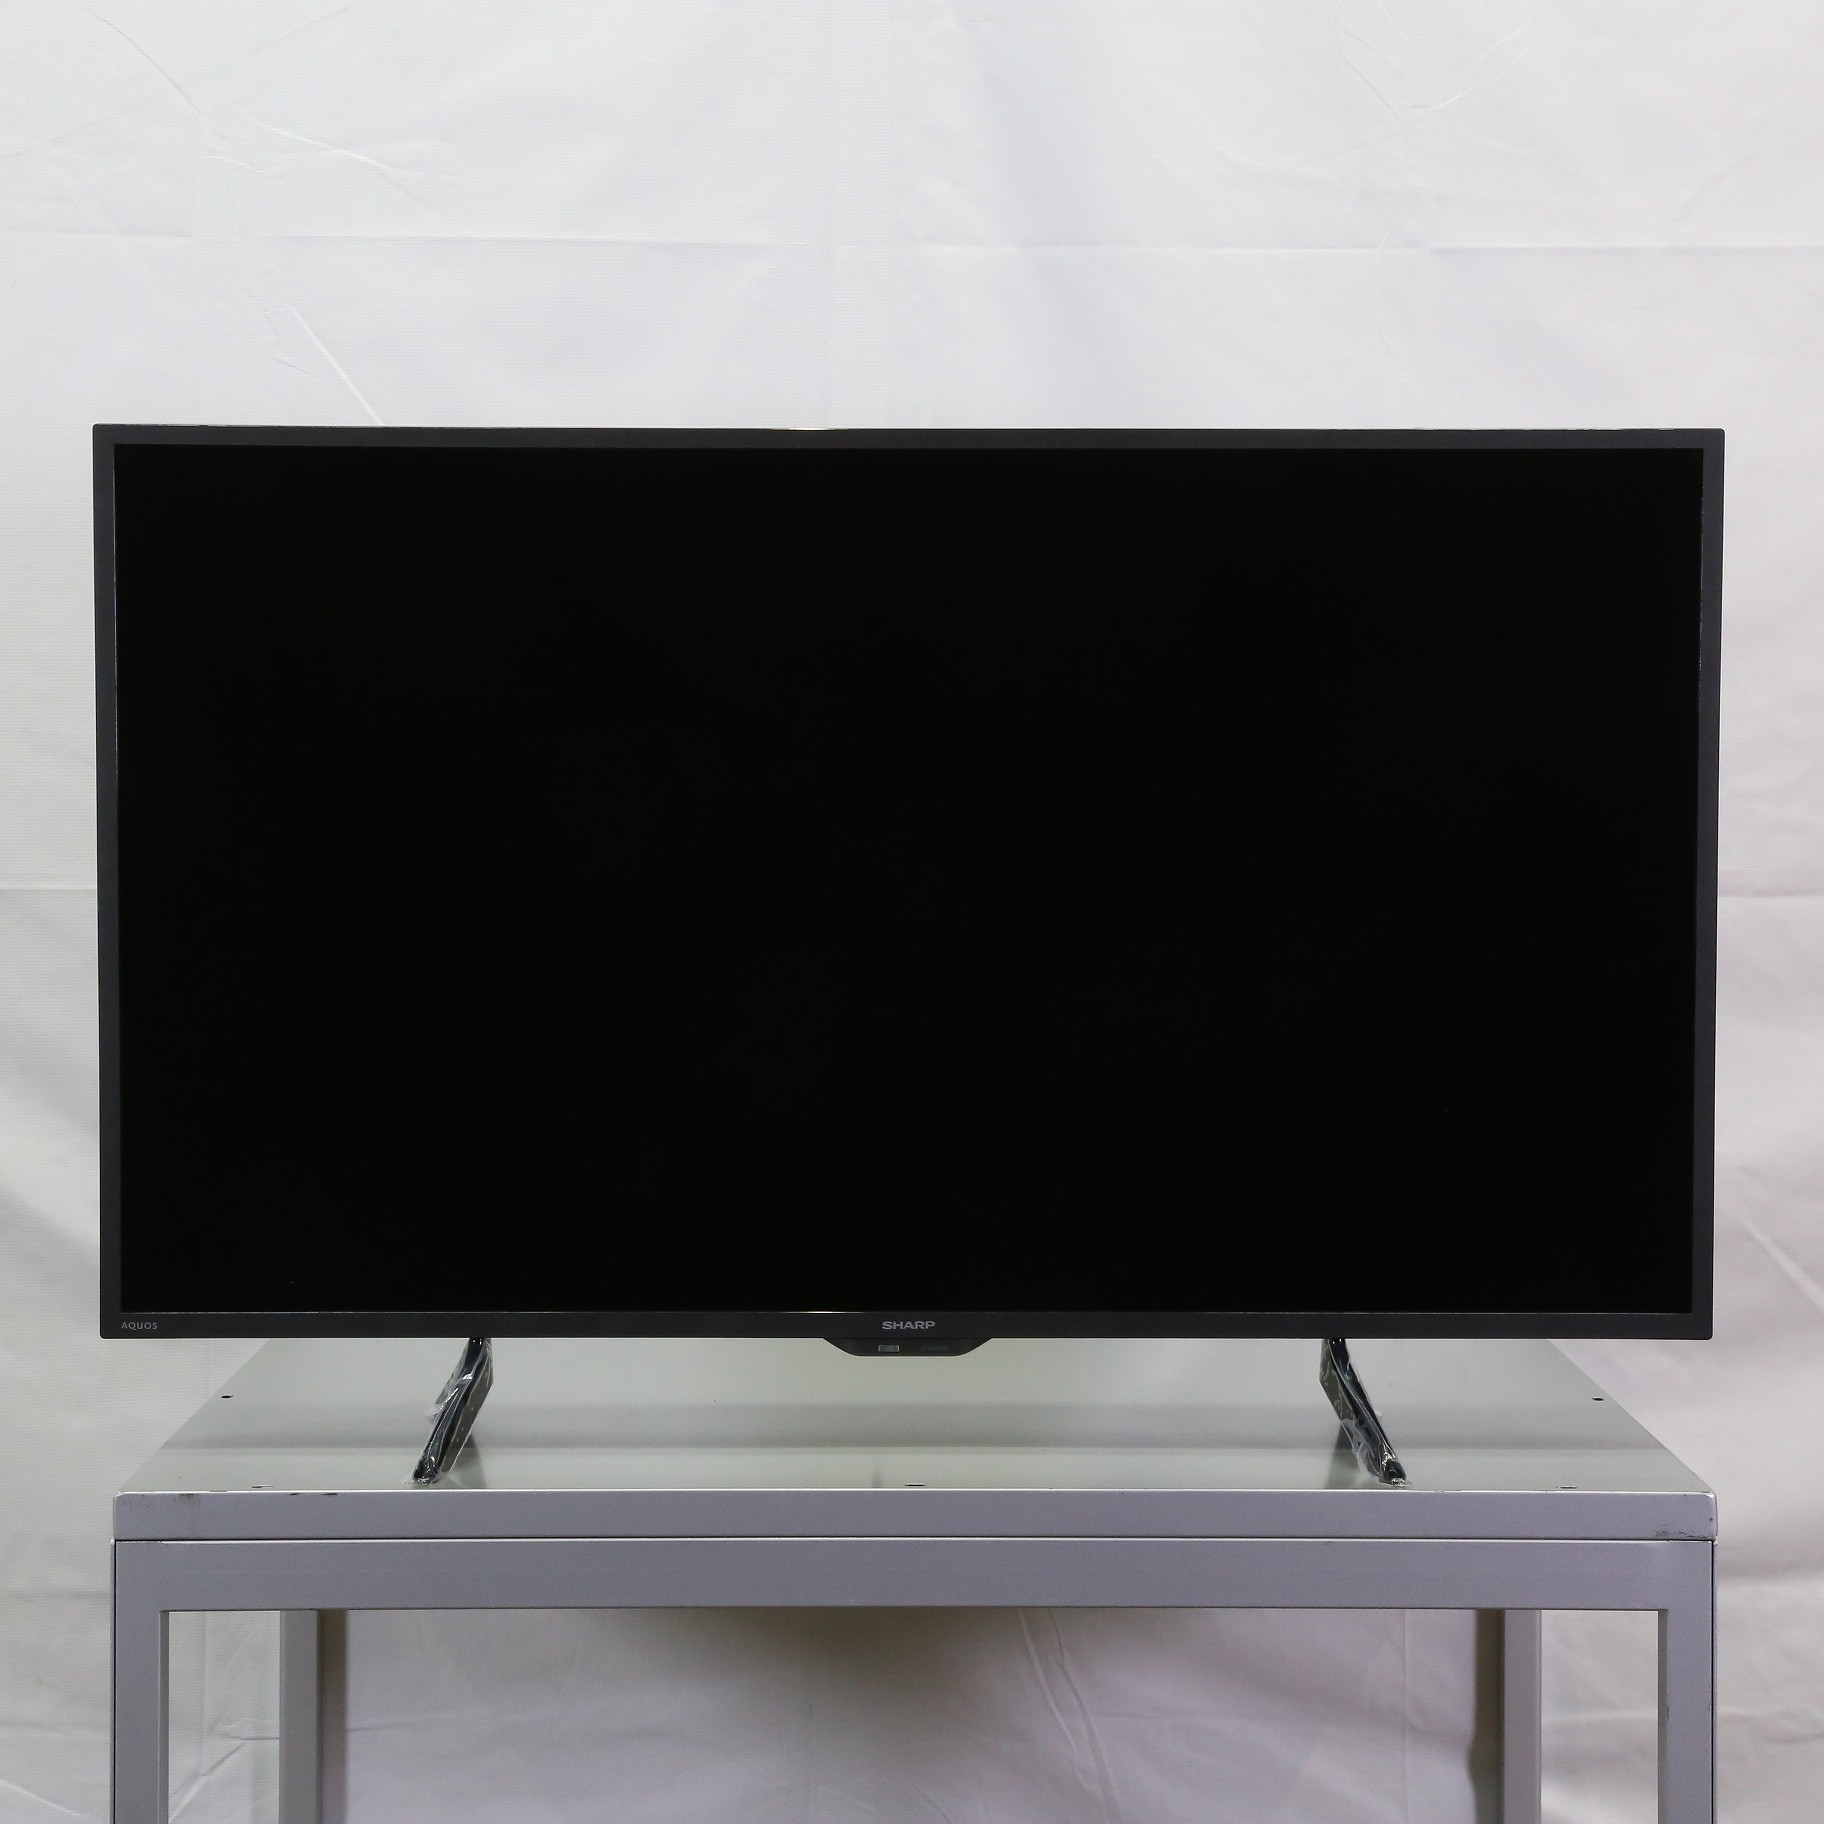 SHARP AQUOS 42V型 フルHD 液晶テレビ 2T-C42BE1画面サイズクラス別442インチ